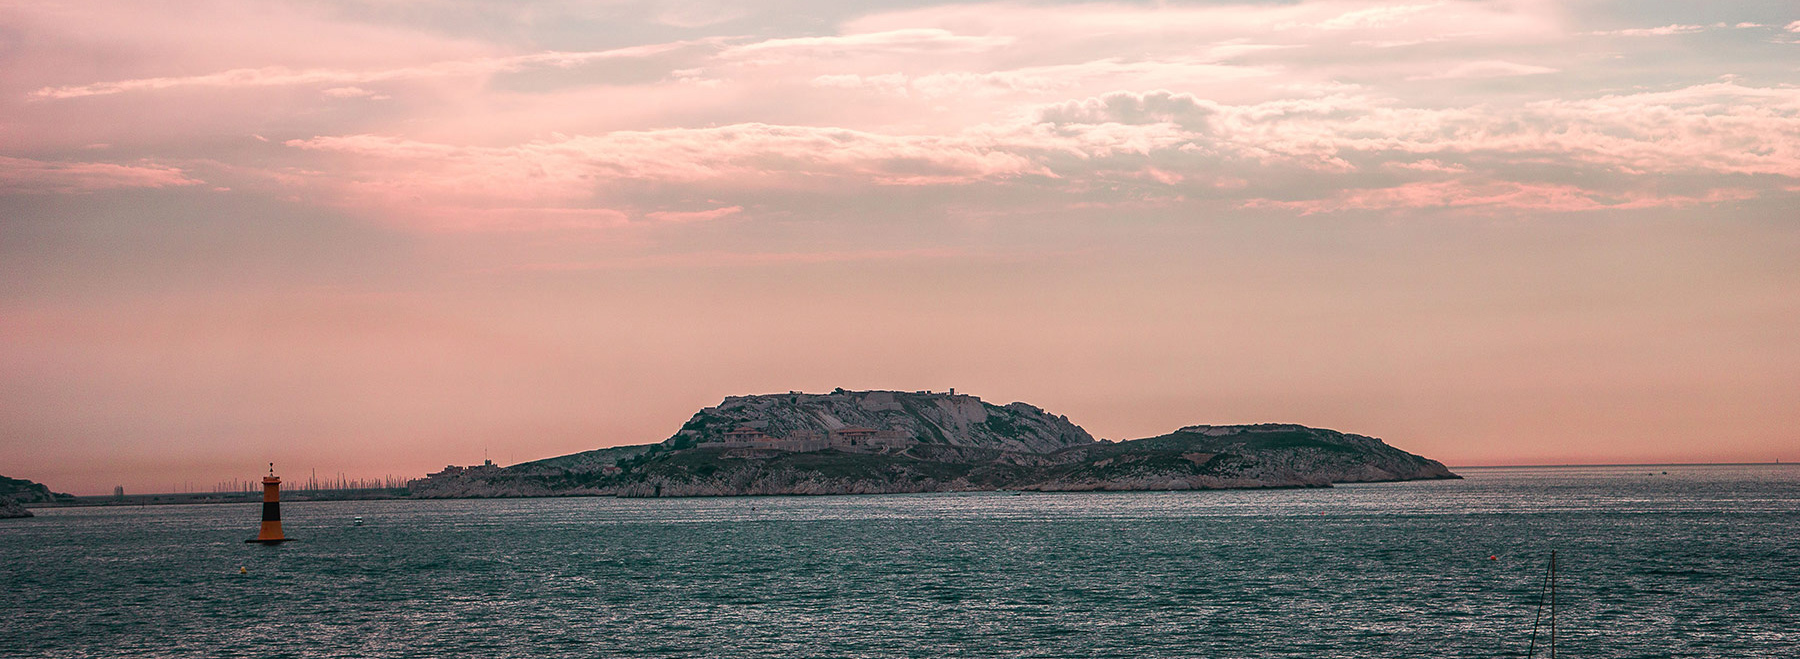 Oh la mer, belle photo des îles du Frioul au large de Marseille, ville à laquelle Stėfāno est très attaché